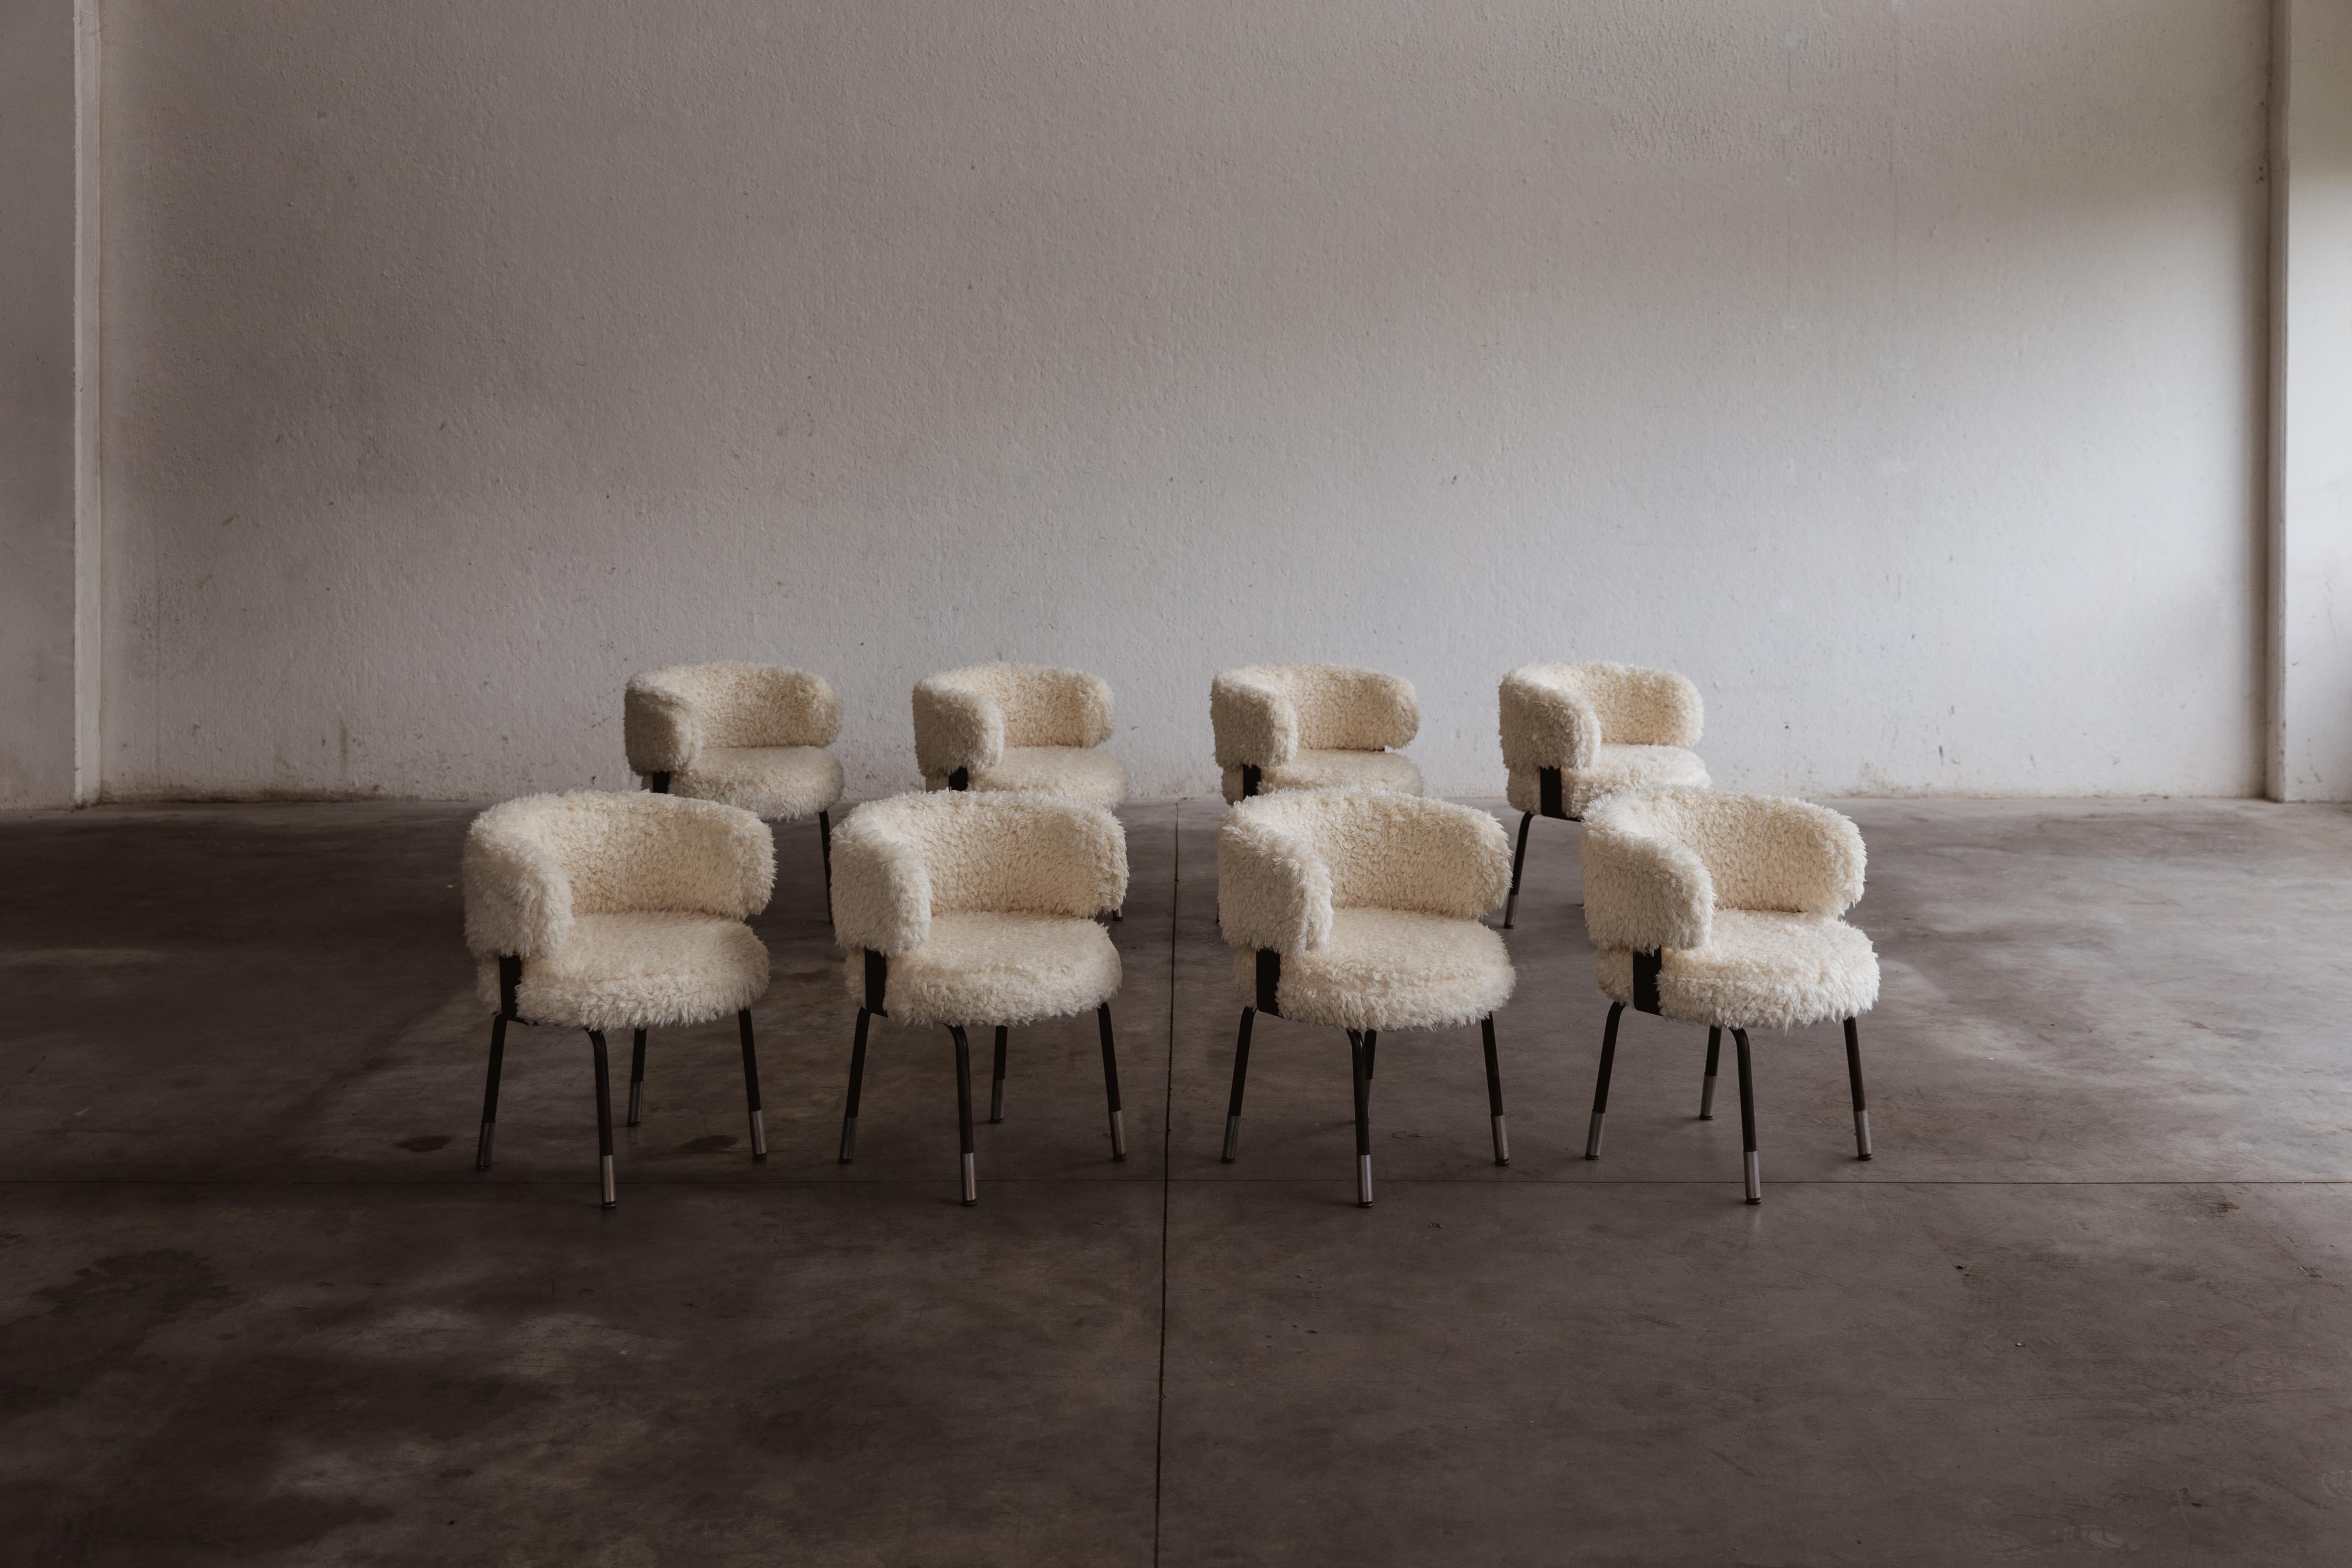 Gianni Moscatelli Esszimmerstühle für Formanova, Kunstfell und Eisen, Italien, 1968, Satz mit acht Stühlen.

Diese Stühle sind zeitlose Entwürfe von Gianni Moscatelli für Formanova aus den 1960er Jahren. Sein Design zeichnet sich durch klare und